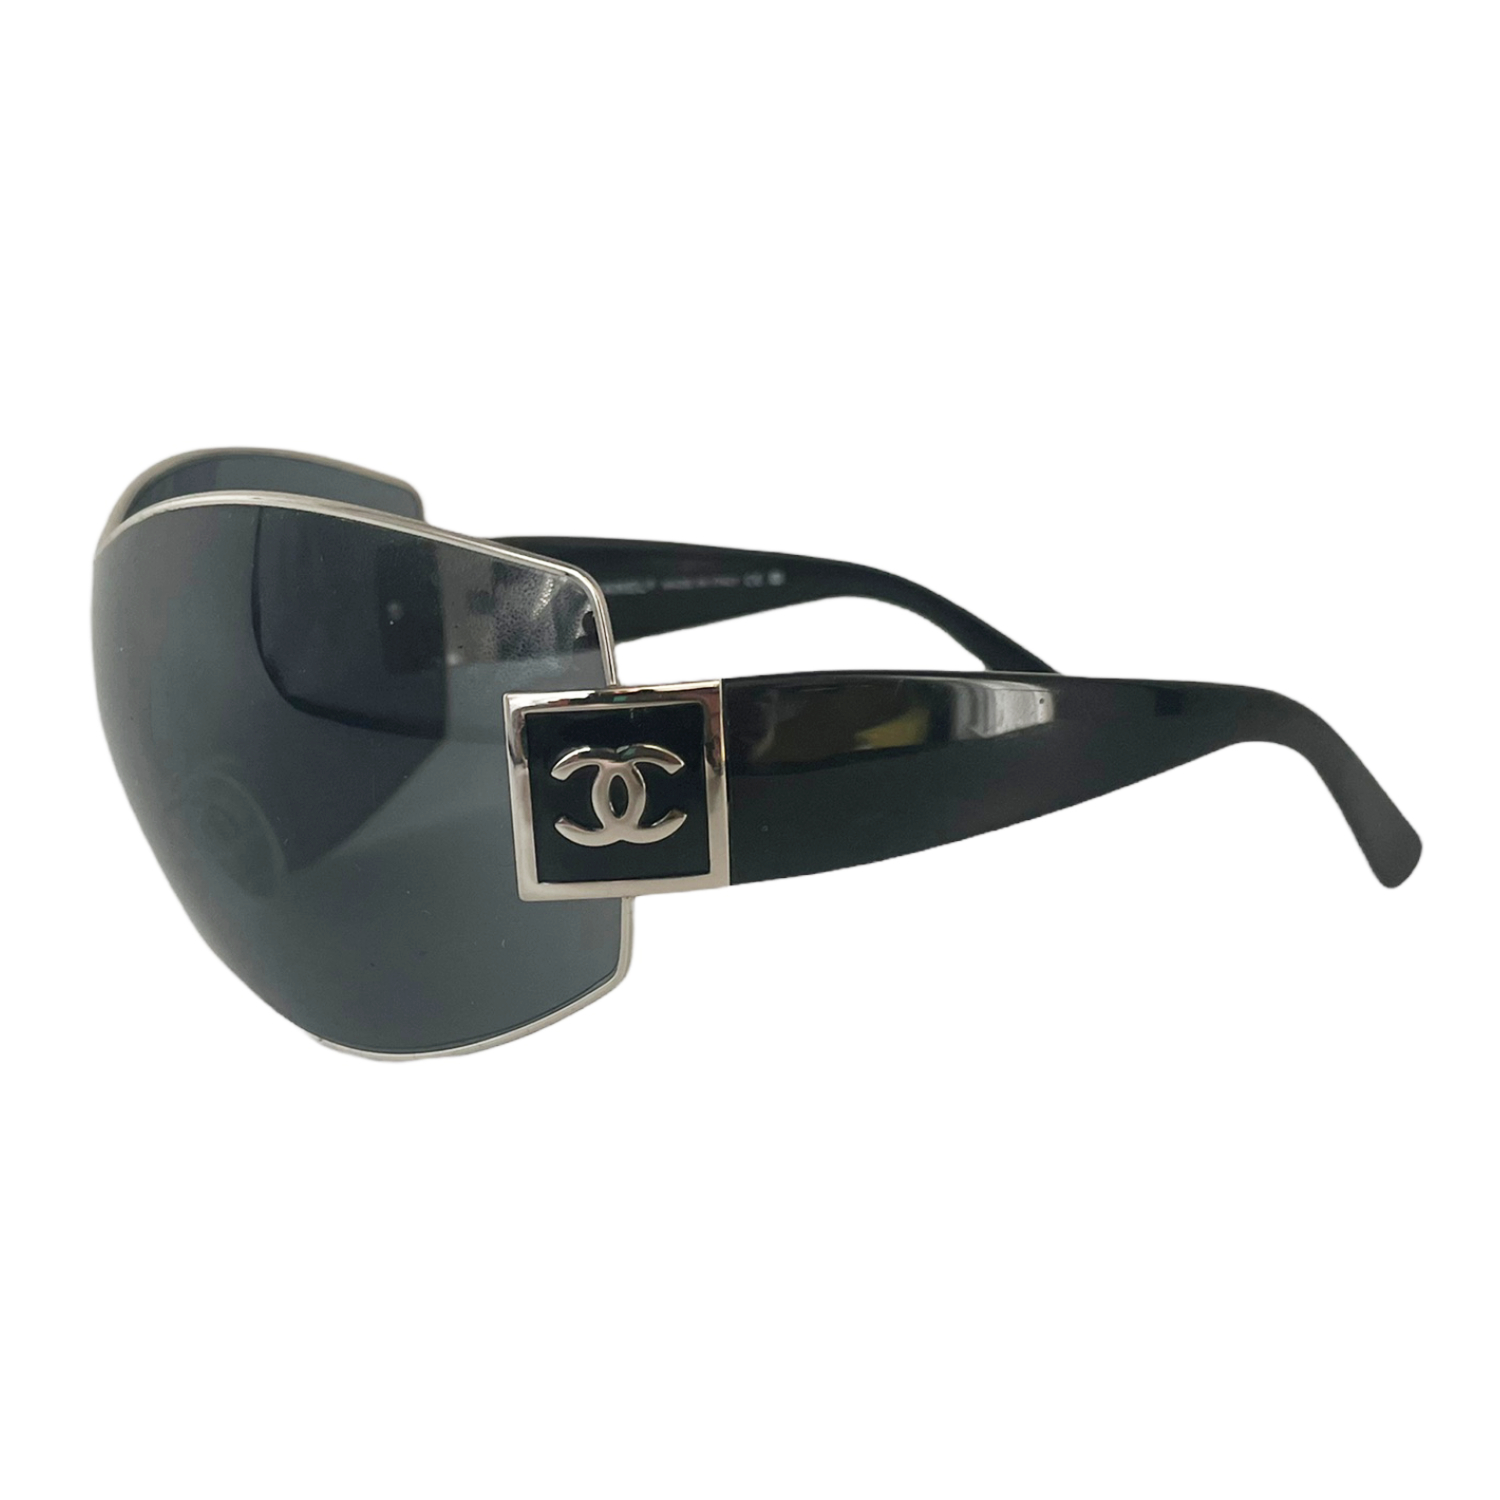 Chanel Oversized Shield Sunglasses in Black / Silver